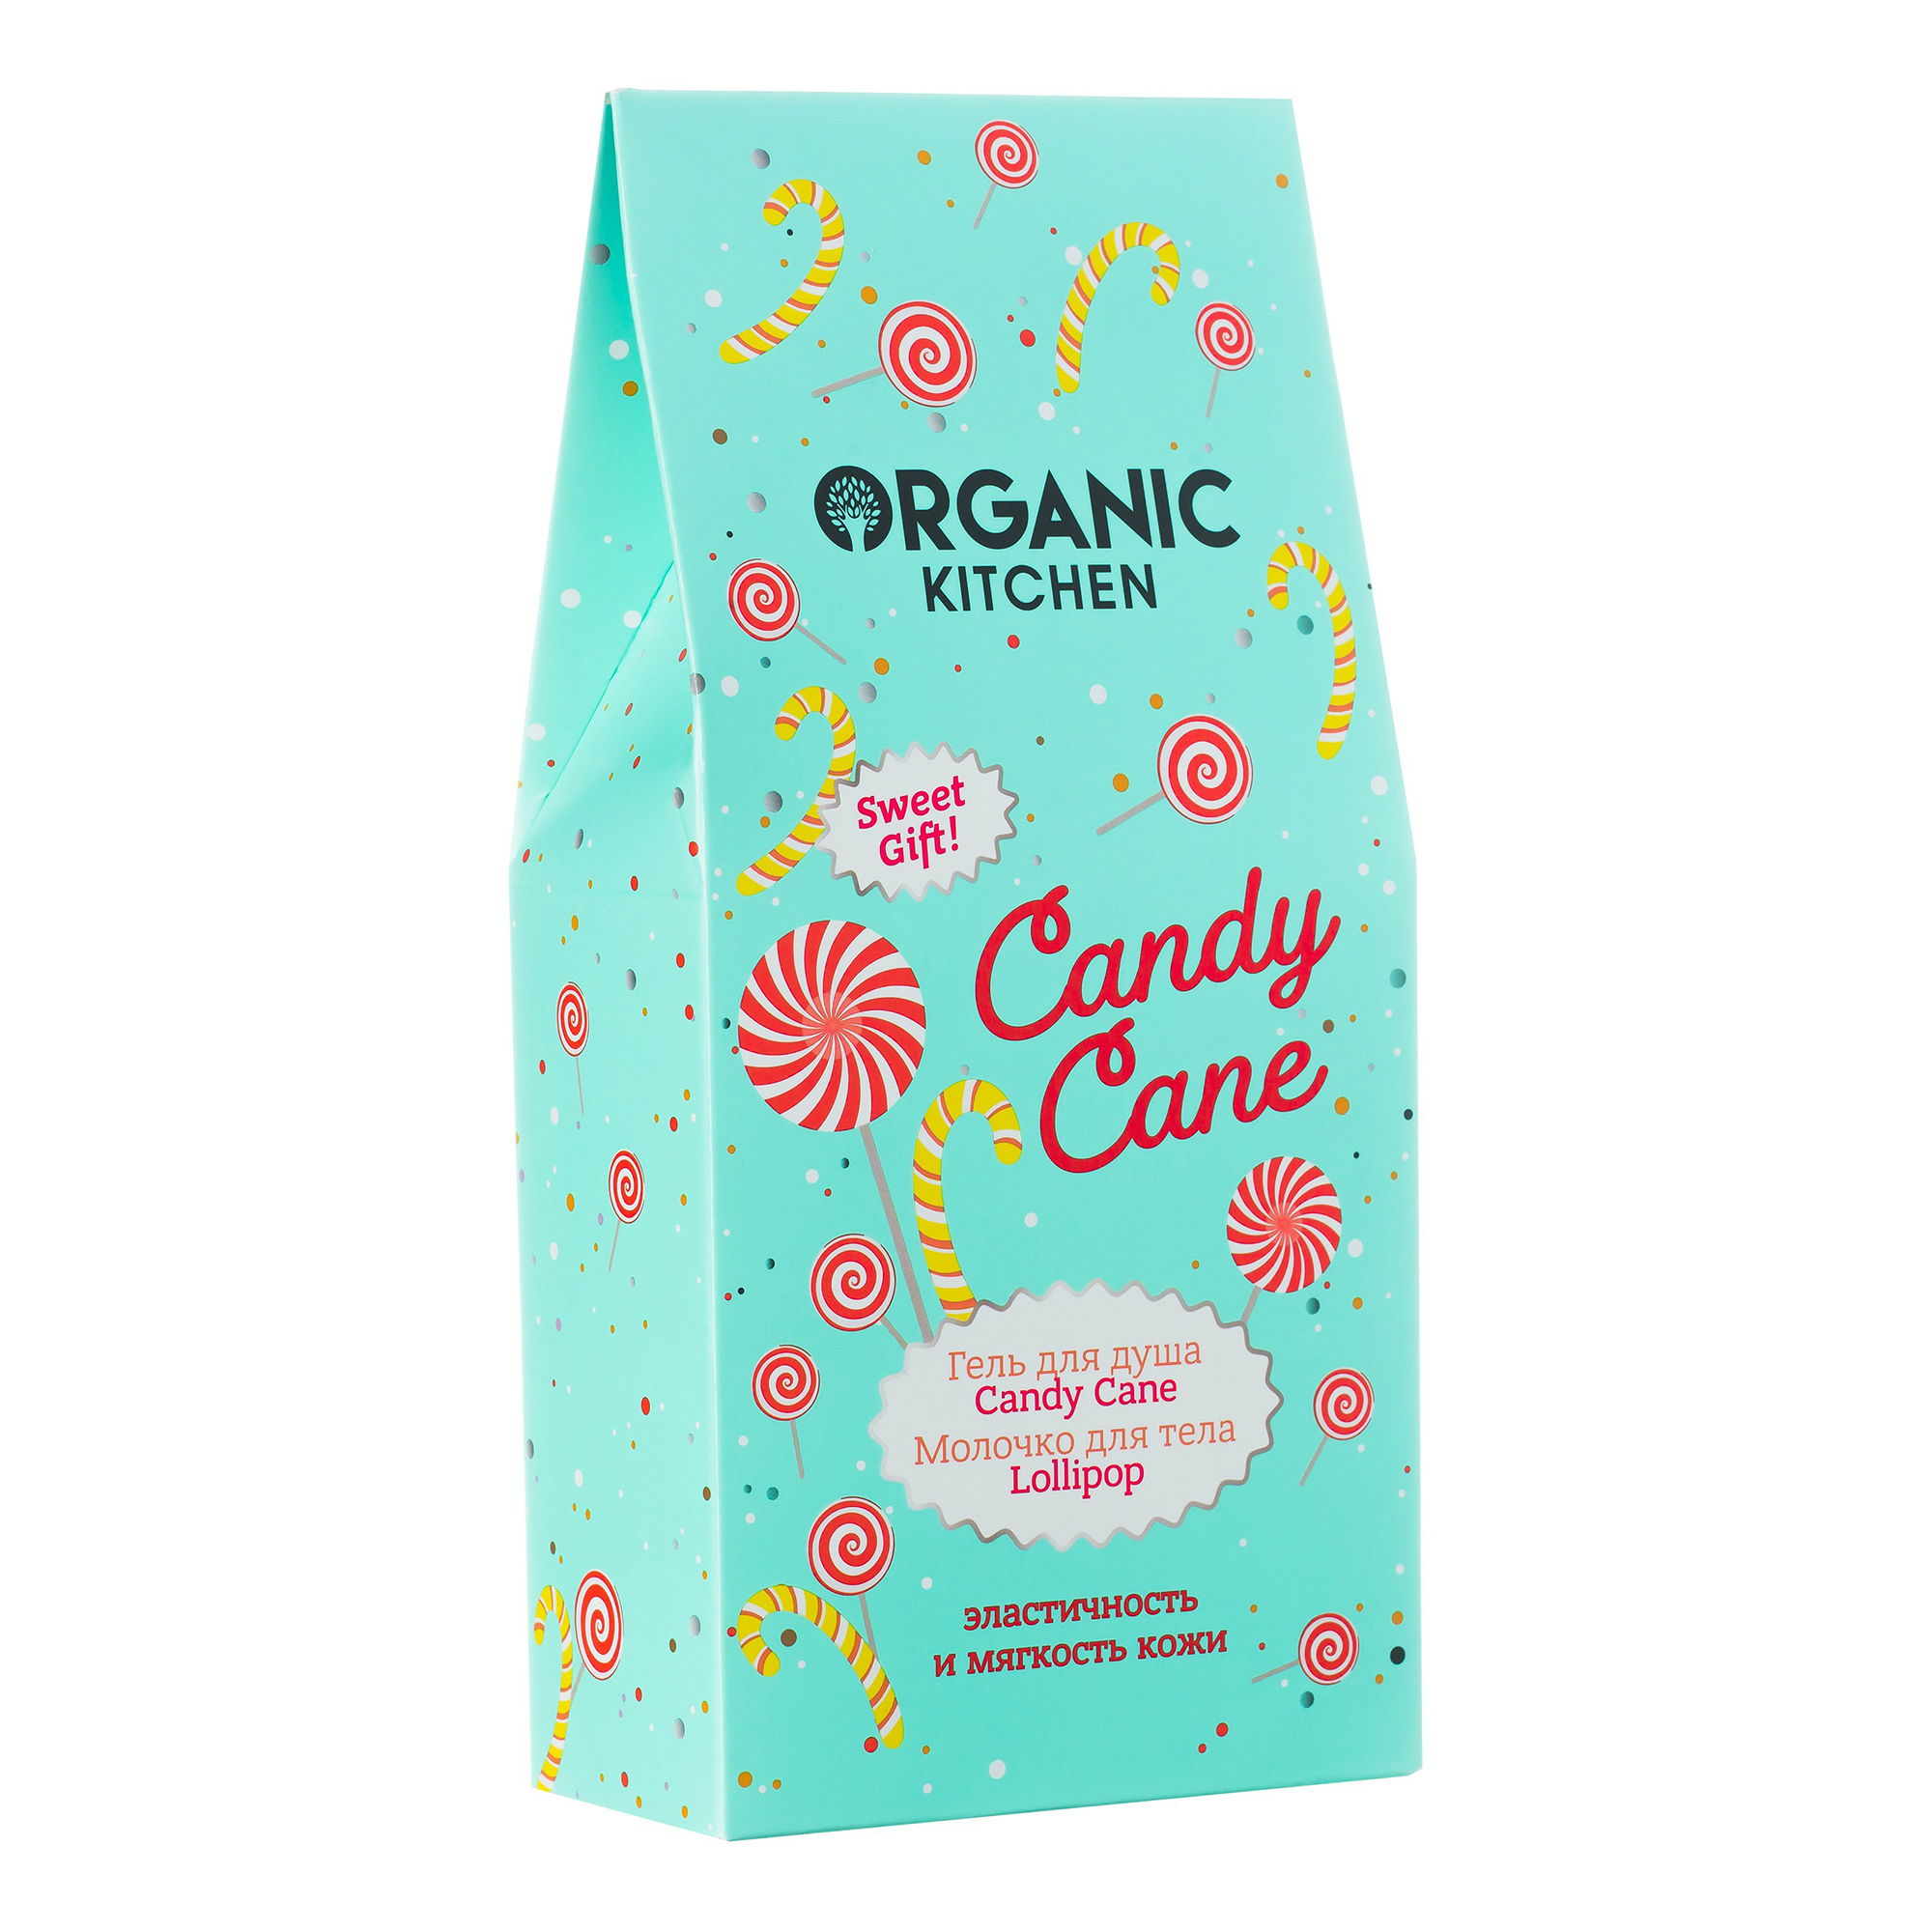 фото Набор косметических средств для тела organic kitchen candy cane 2 предмета